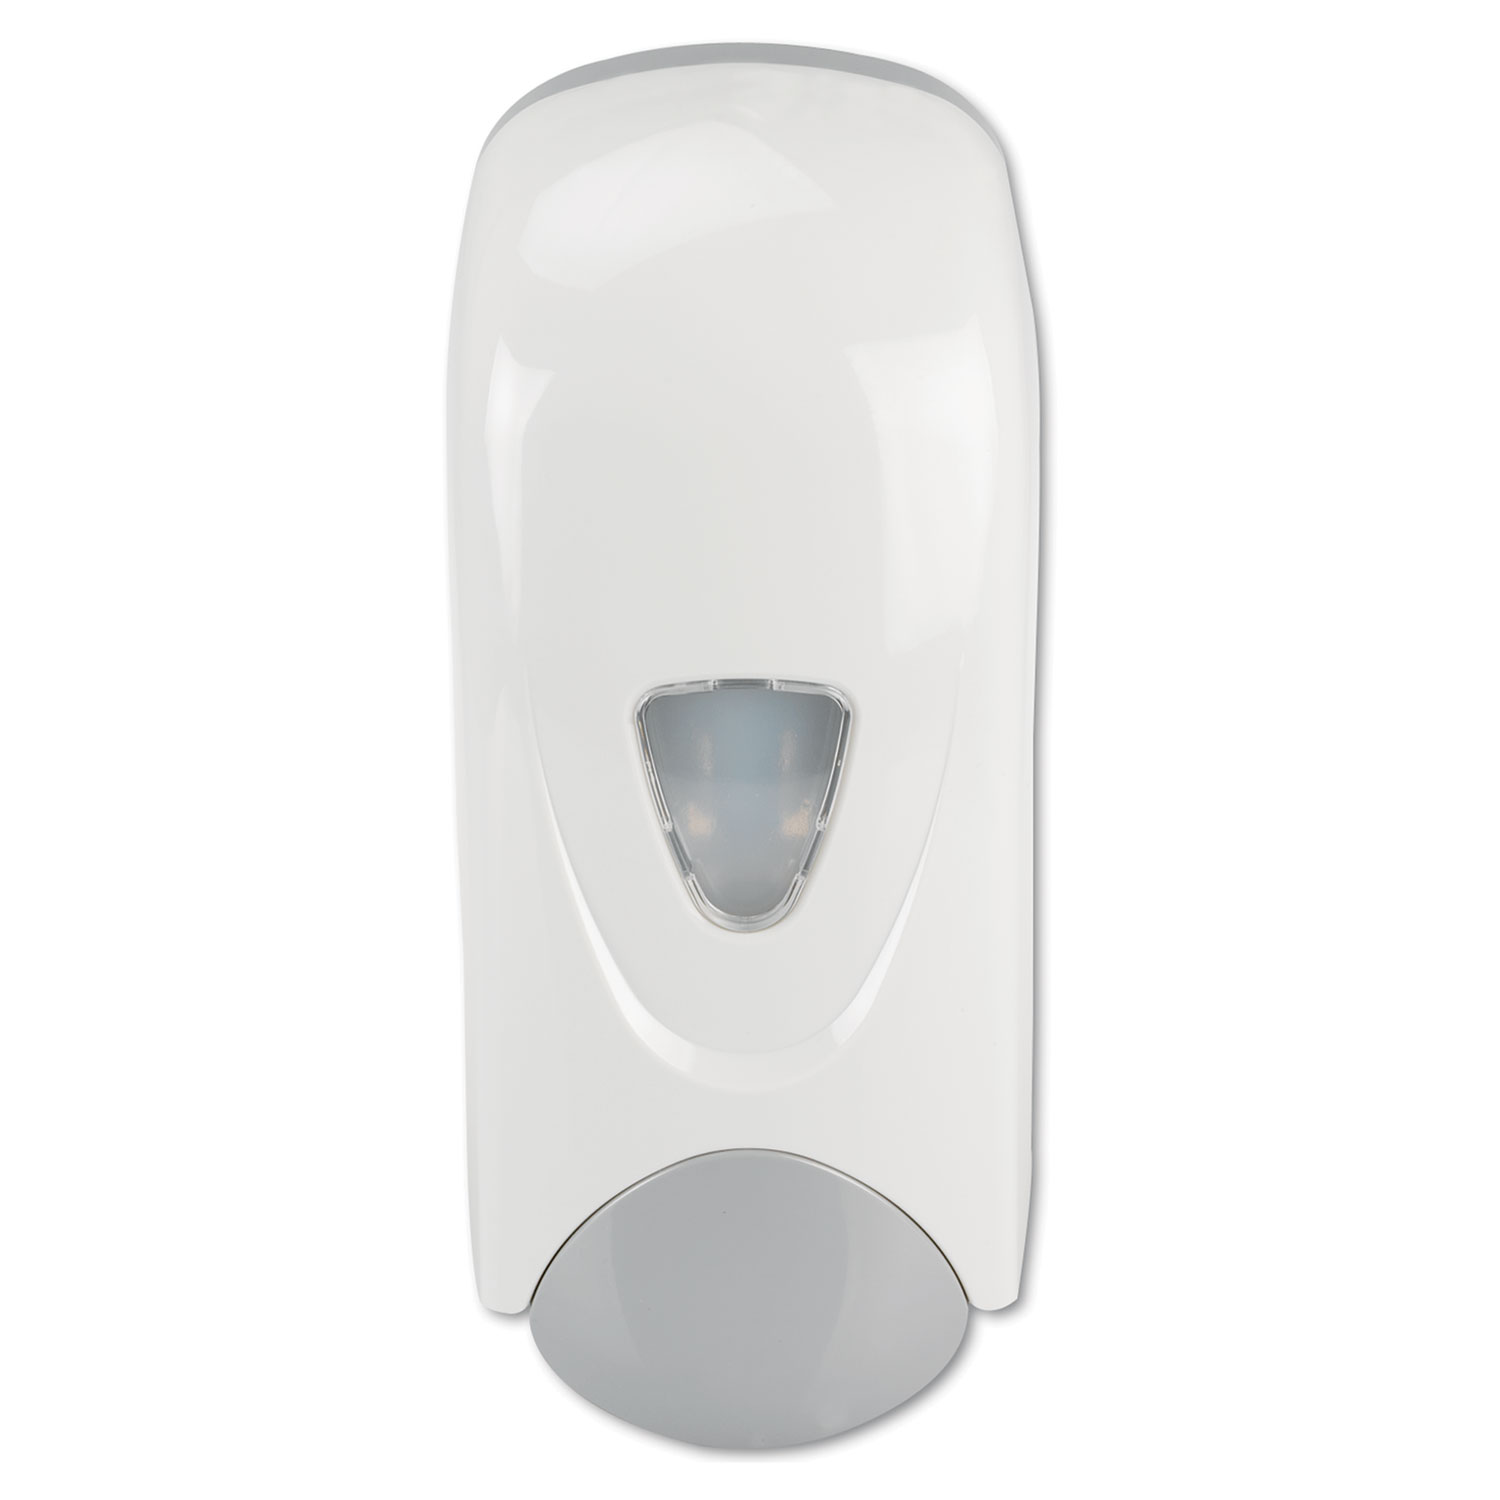 Foam-eeze Bulk Foam Soap Dispenser with Refillable Bottle, 1000 mL, 4.88